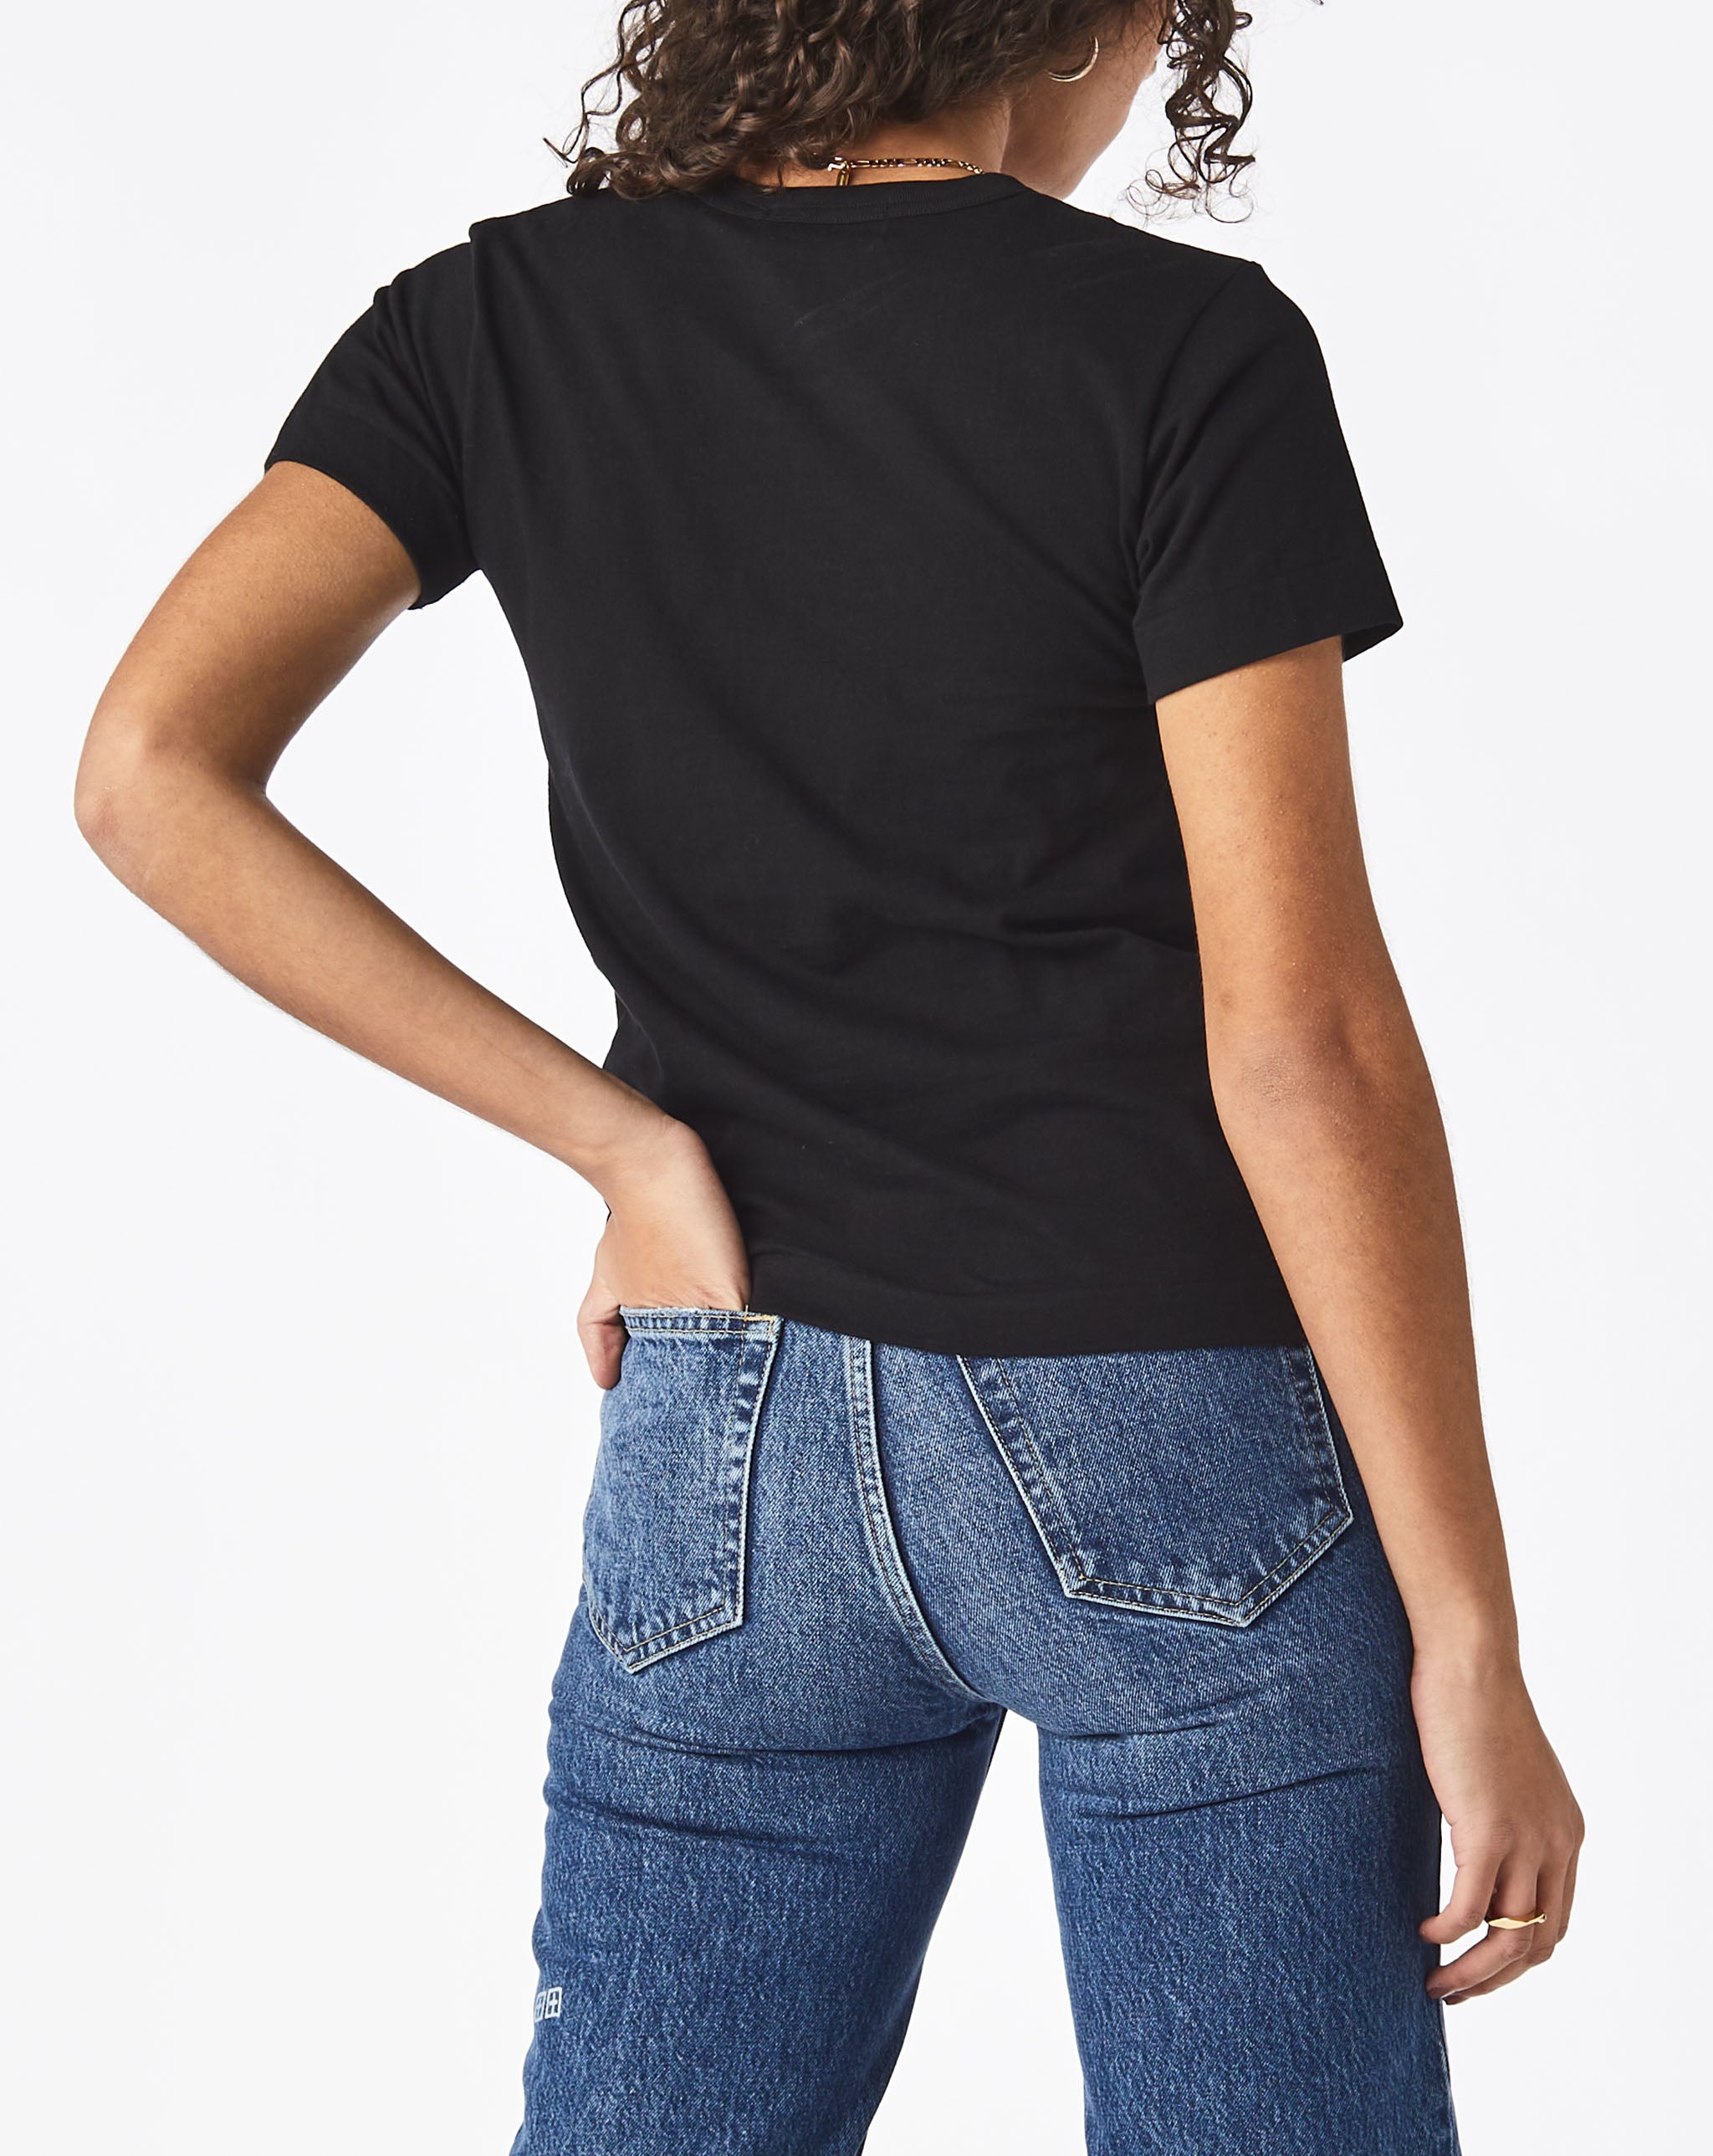 pinstripe print shirt marni shirt Women's Play T-Shirt  - Cheap Urlfreeze Jordan outlet